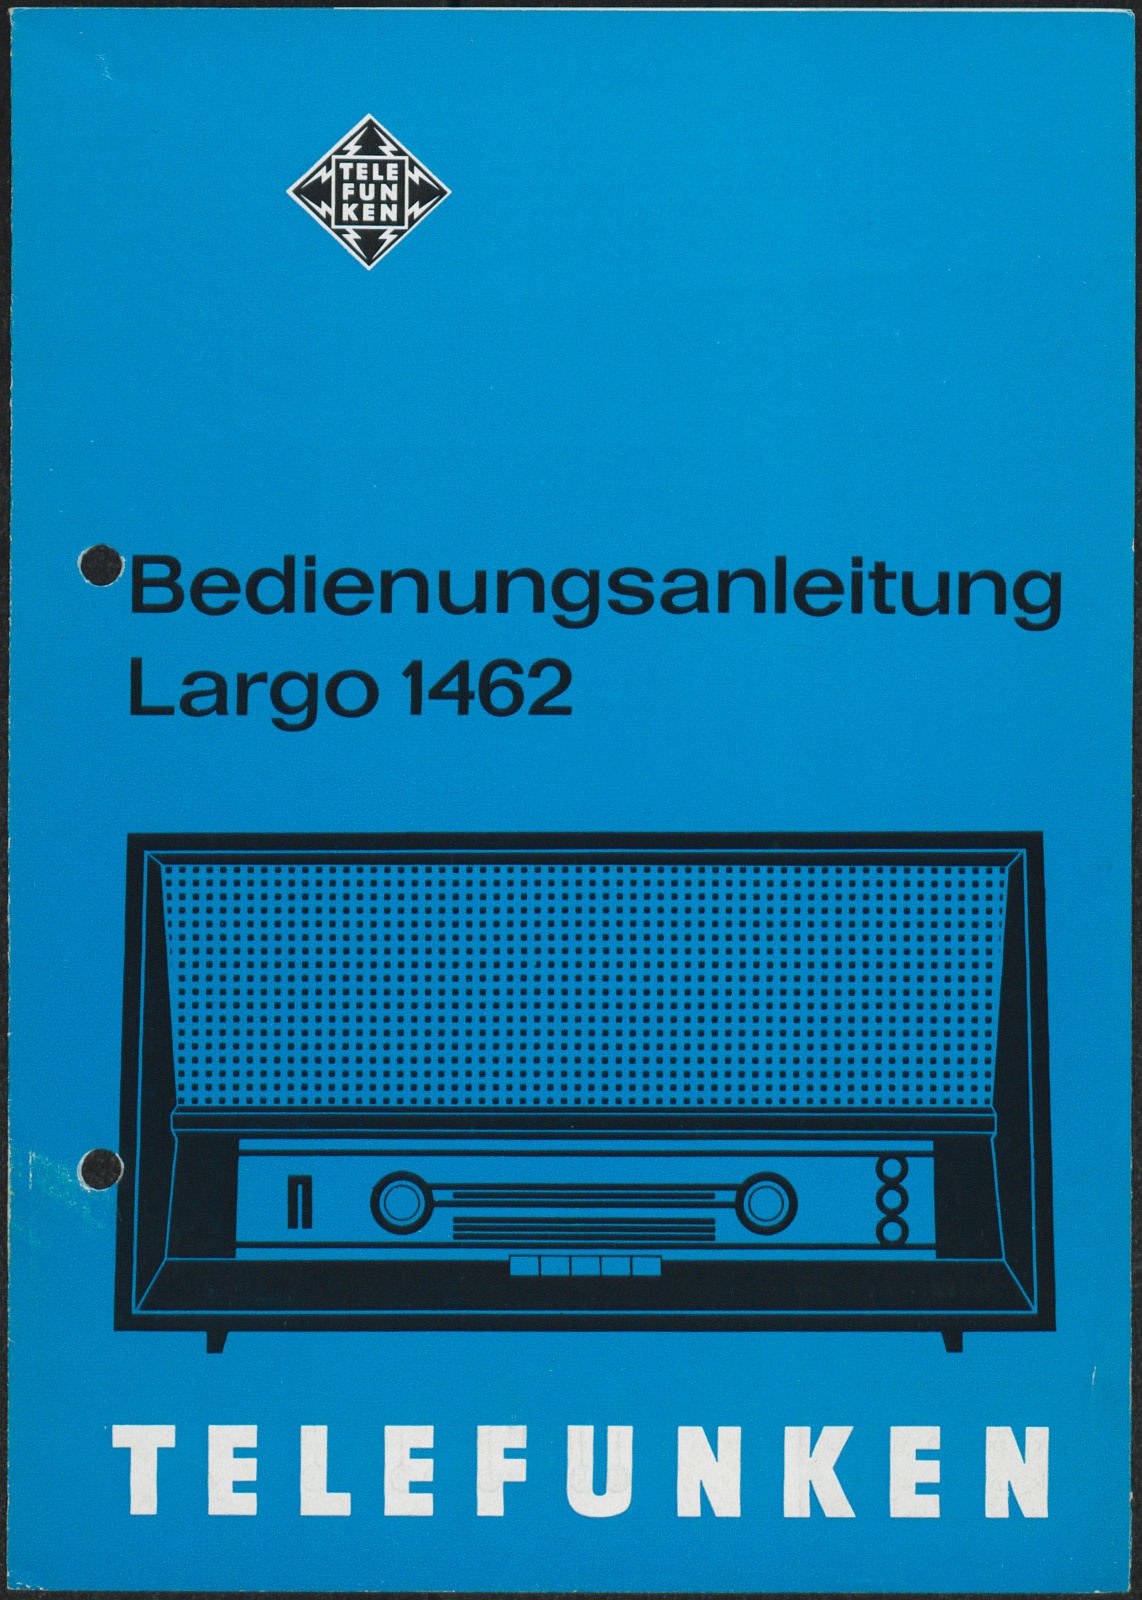 Bedienungsanleitung: Bedienungsanleitung Telefunken Largo 1462 (Stiftung Deutsches Technikmuseum Berlin CC0)